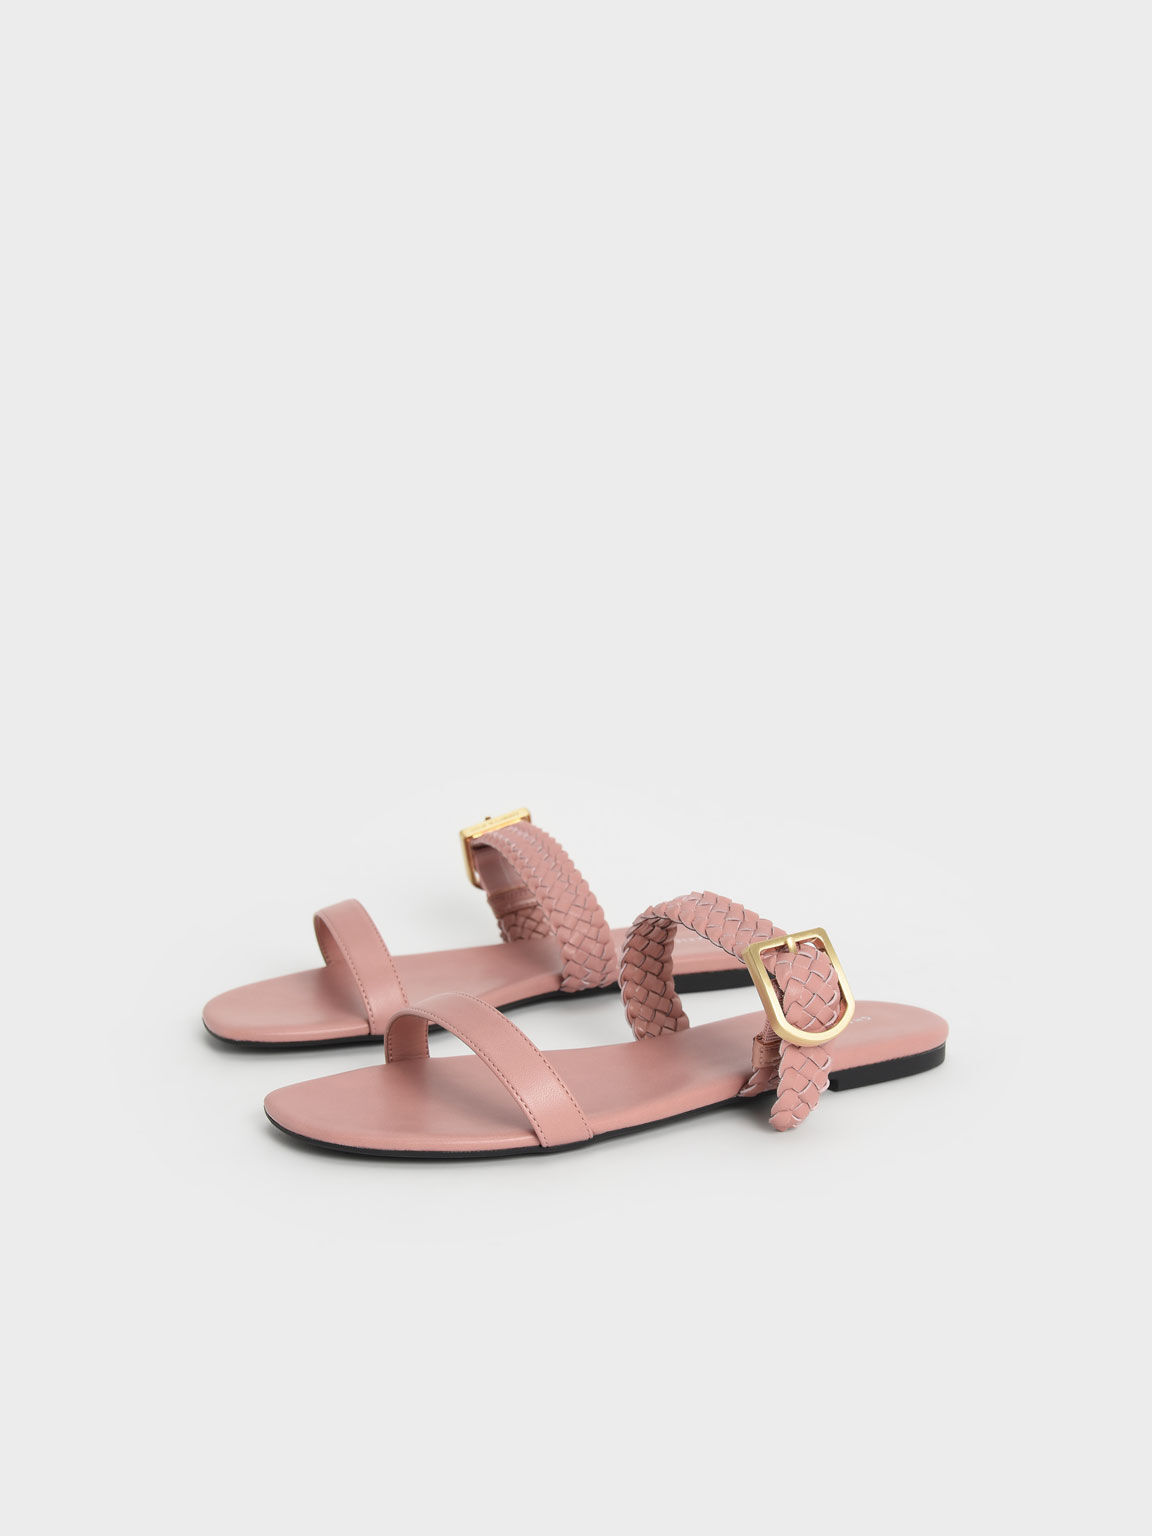 Woven Strap Slide Sandals, Pink, hi-res